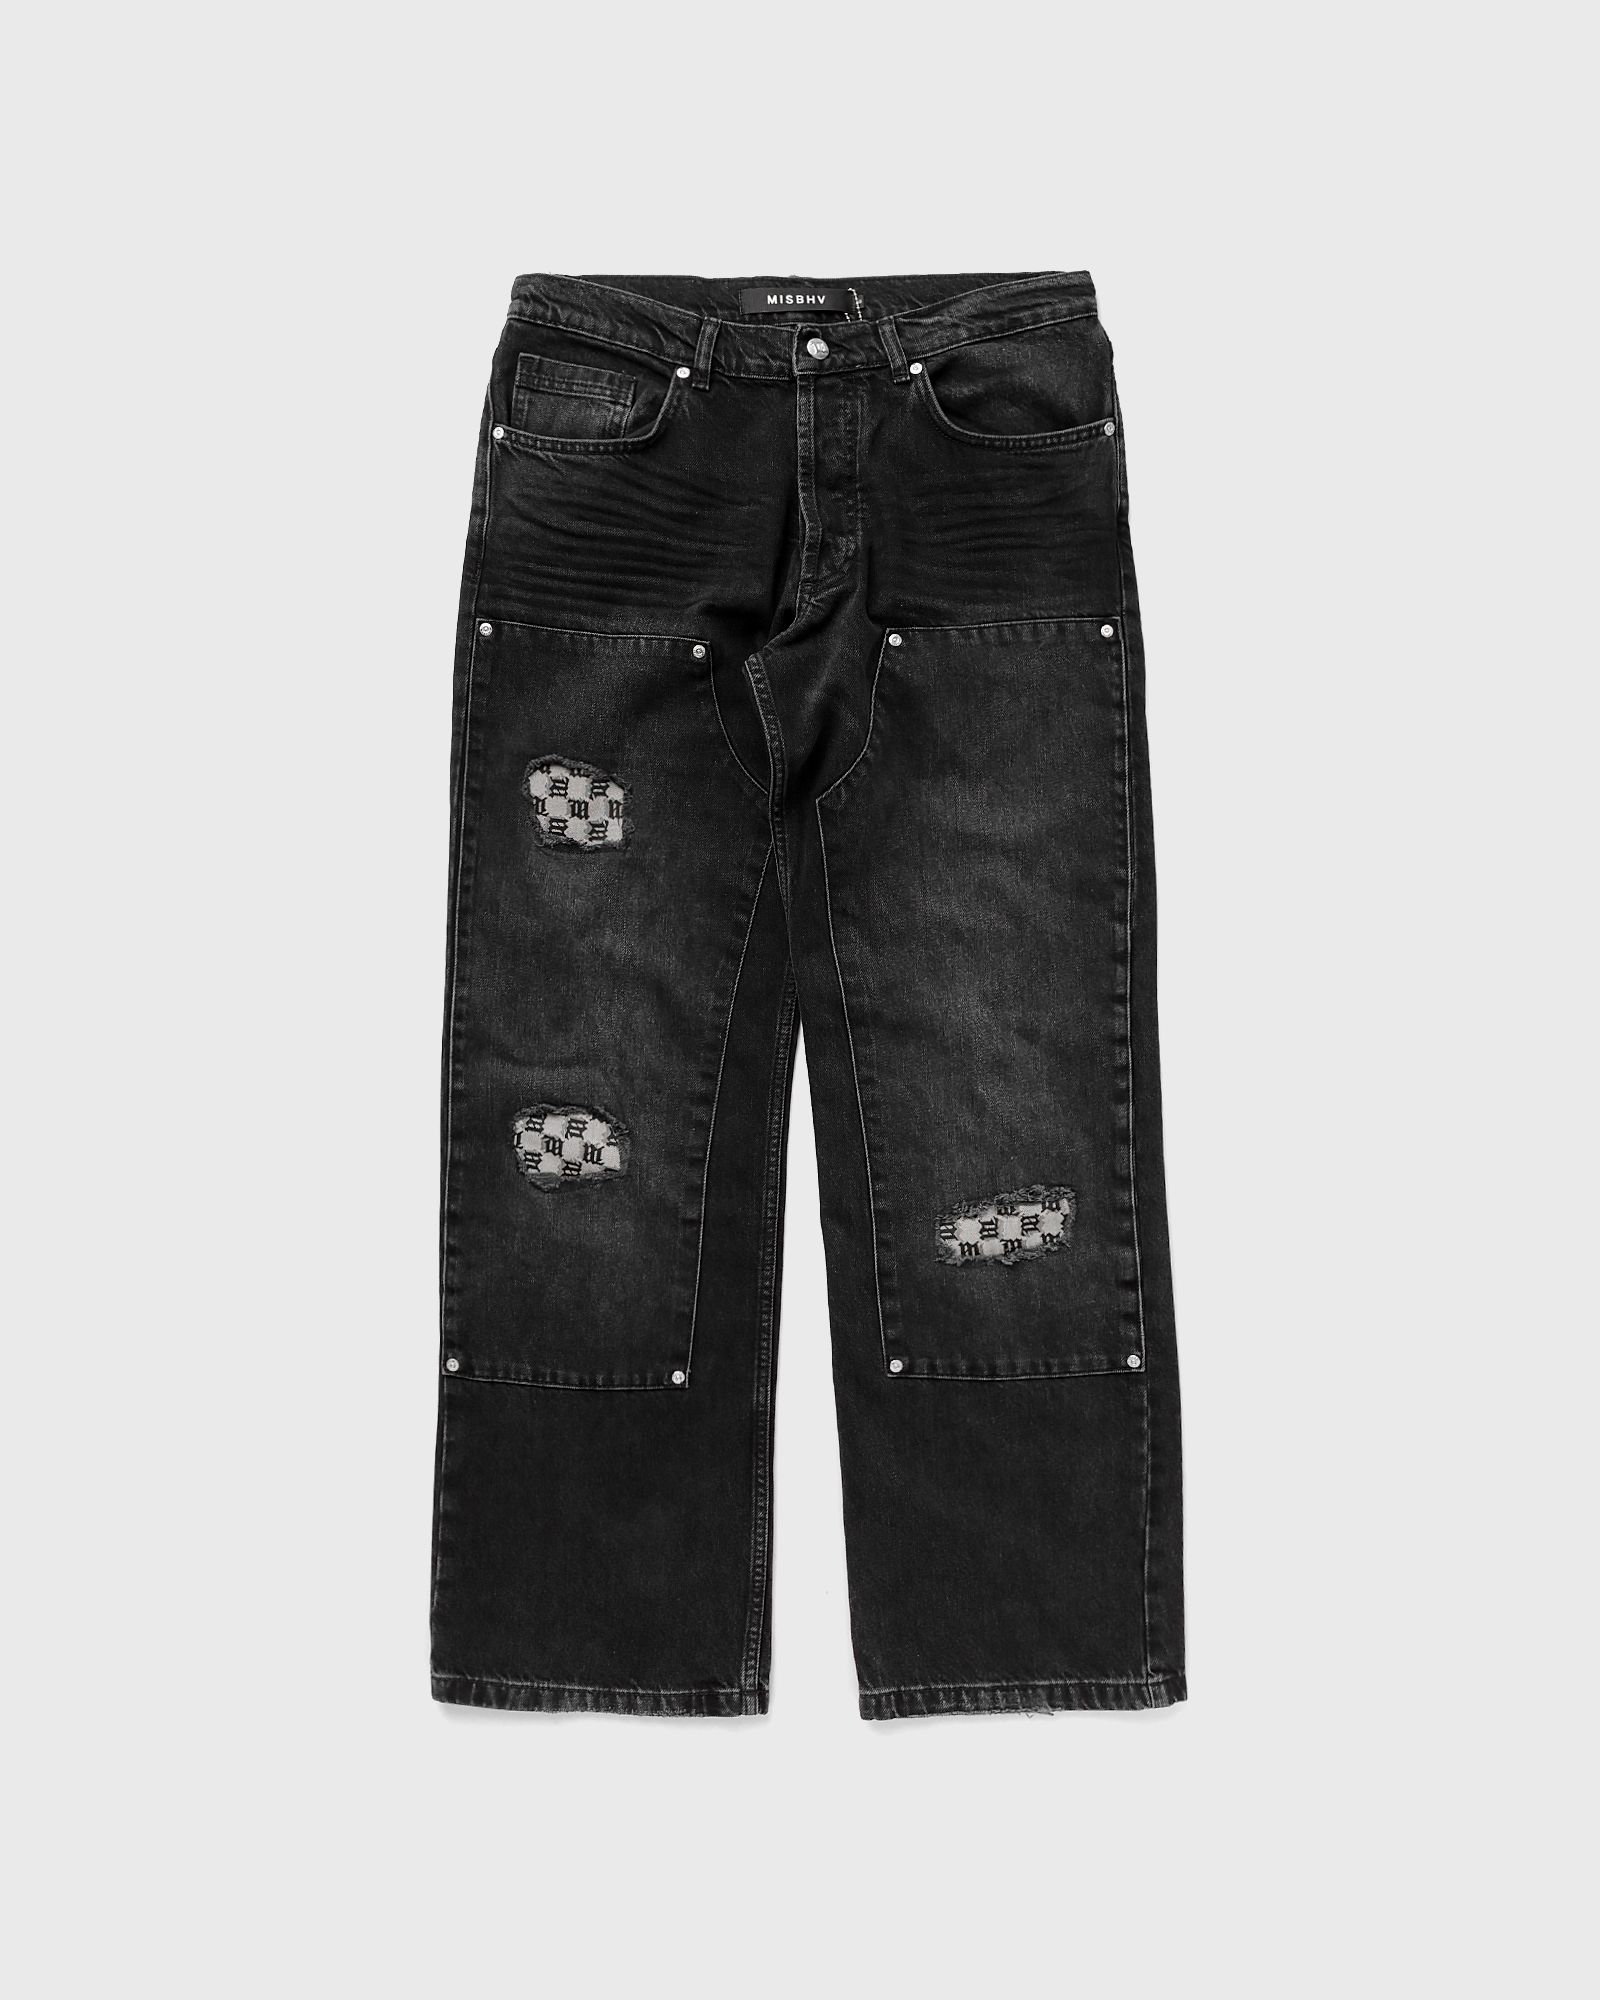 MISBHV - monogram carpenter trousers men jeans black in größe:l